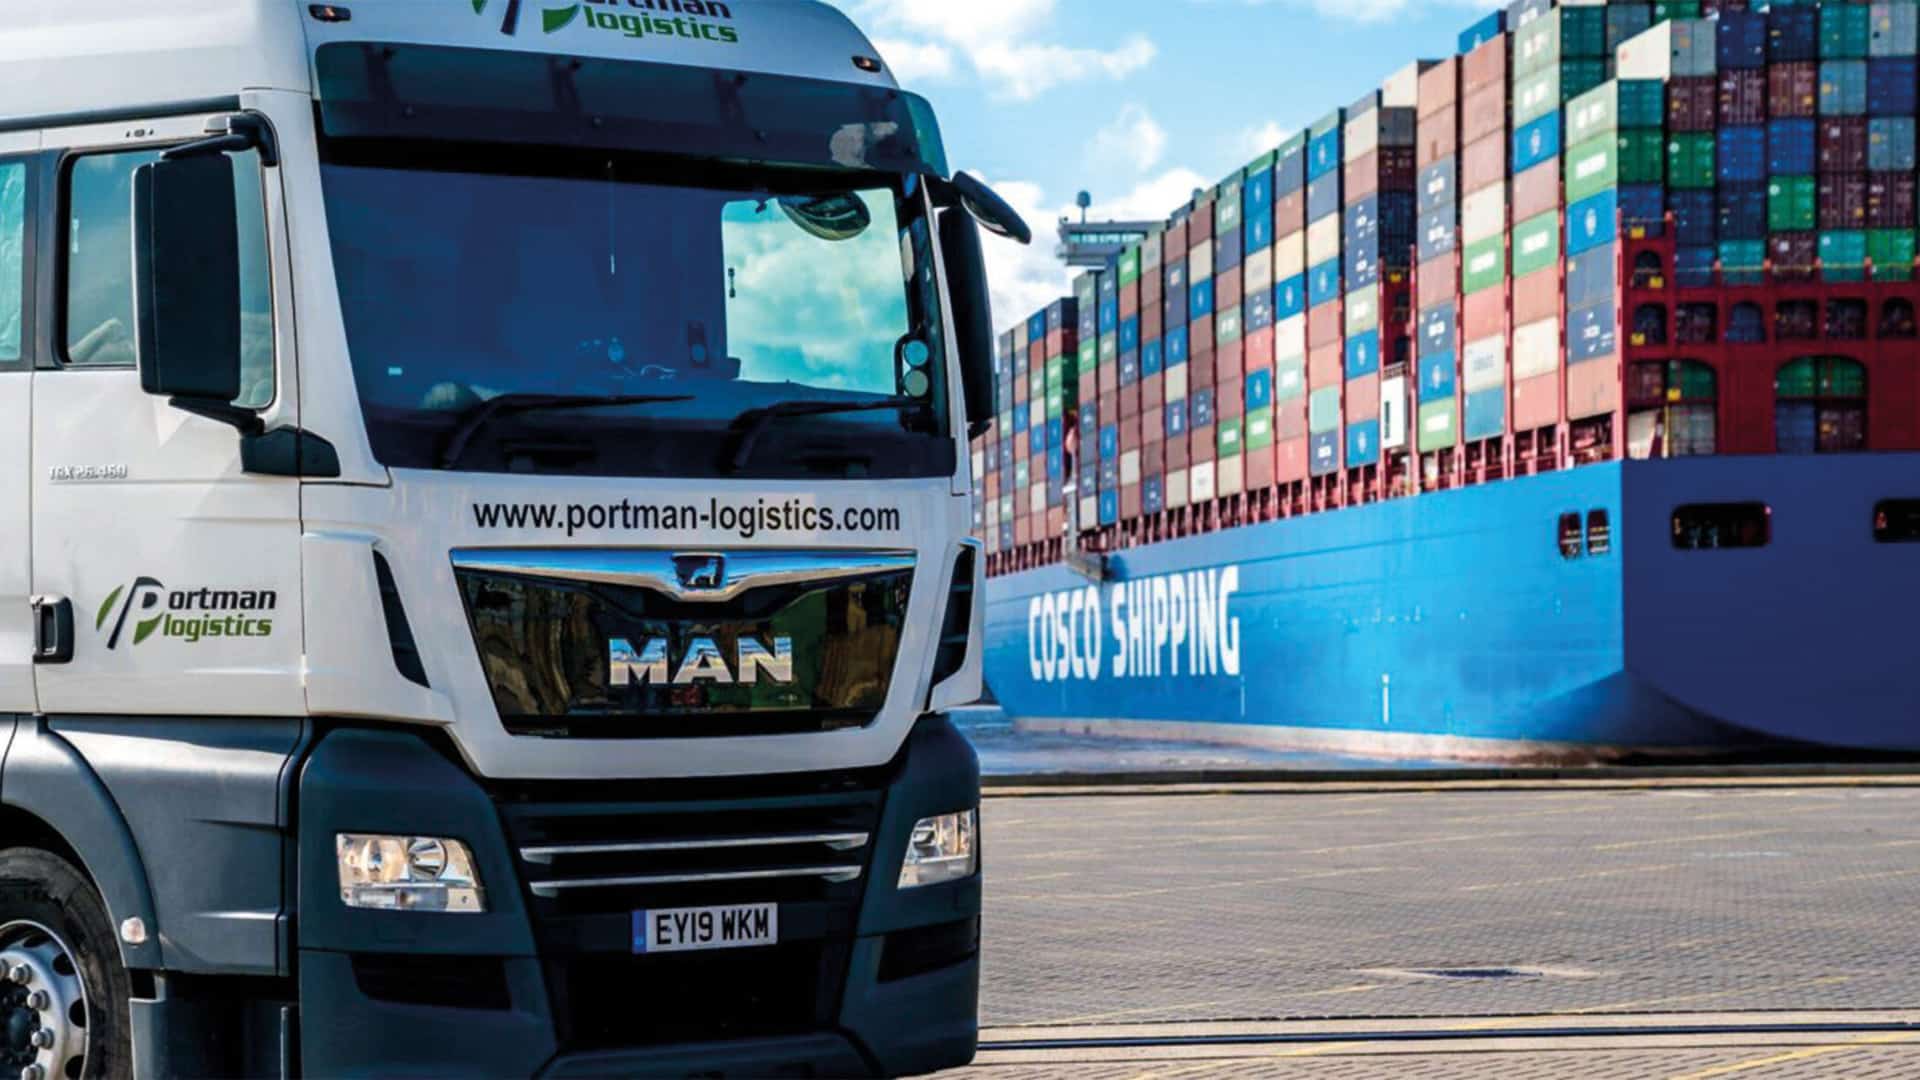 A photo of a portman logistics truck.